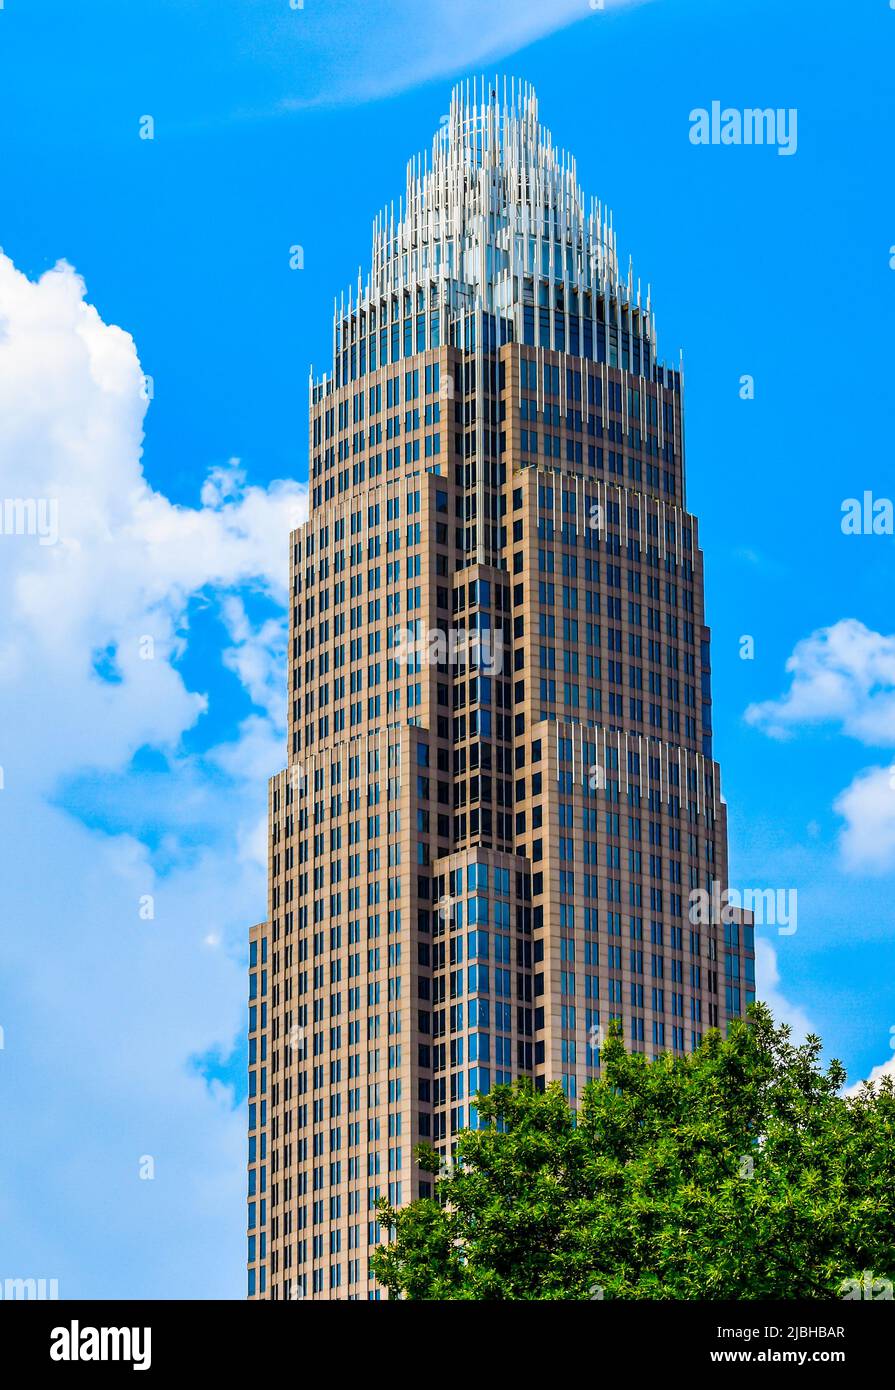 La sede centrale della Bank of America, il più alto edificio commerciale nella parte alta di Charlotte, North Carolina, in una giornata di sole con cielo blu e nuvole. Foto Stock